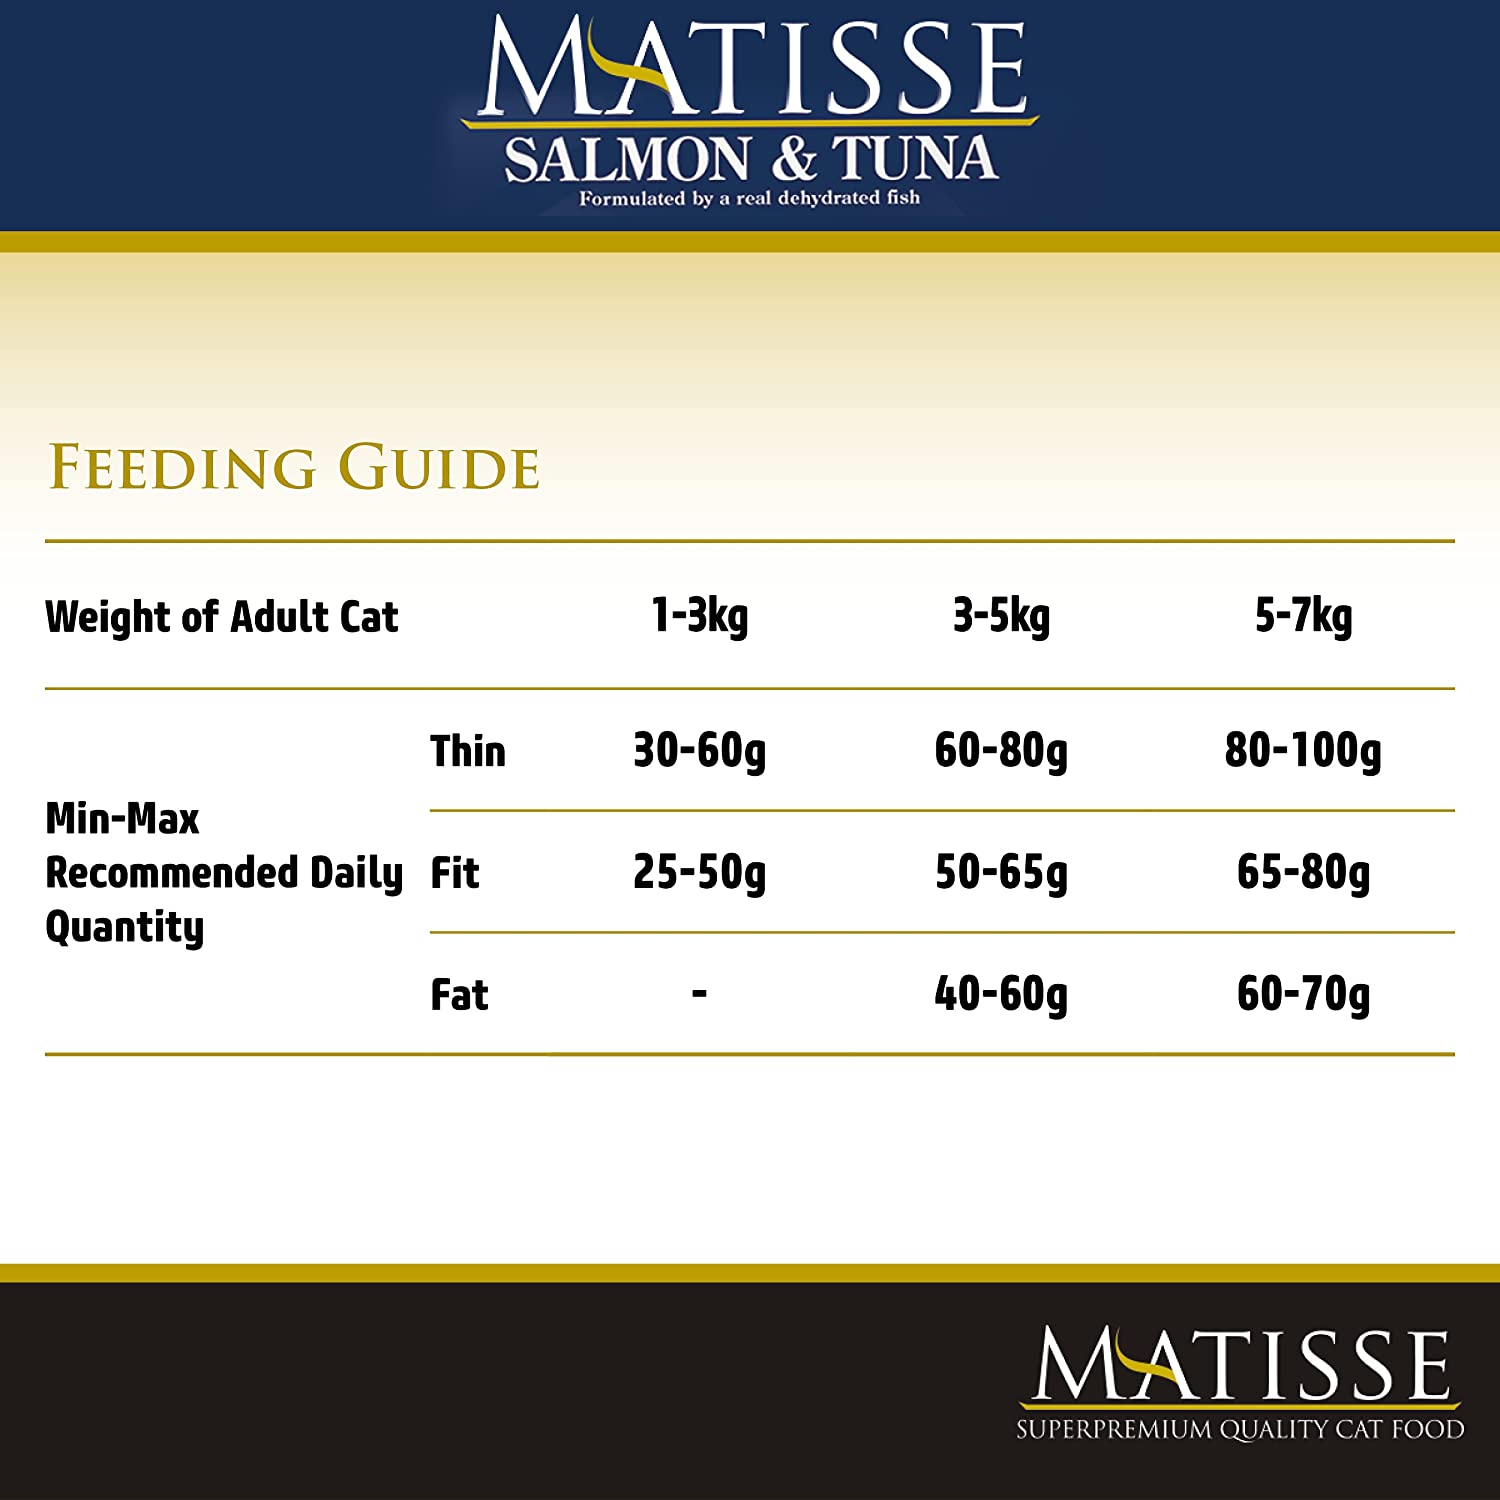 Farmina Matisse Salmon & Tuna Adult Cat Dry Food